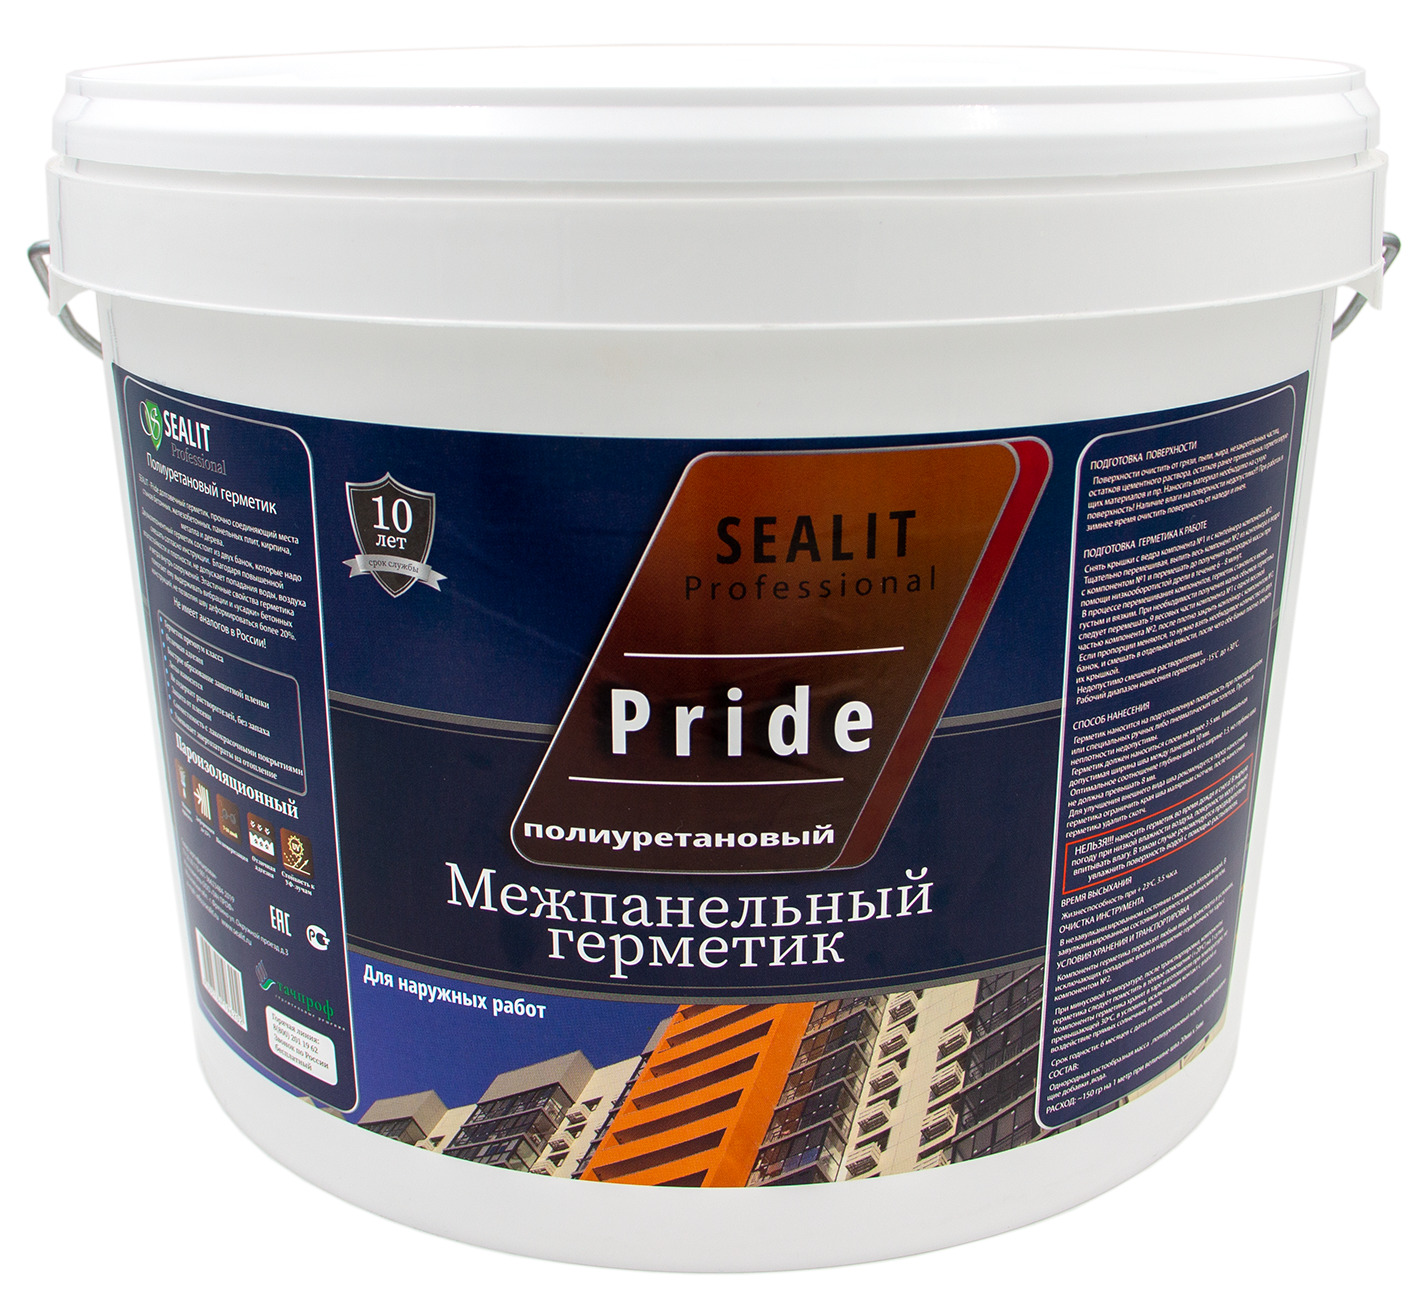 Двухкомпонентный герметик для межпанельных швов Sealit Pride 12,5 кг, серый герметик для межпанельных швов и бетона invamat